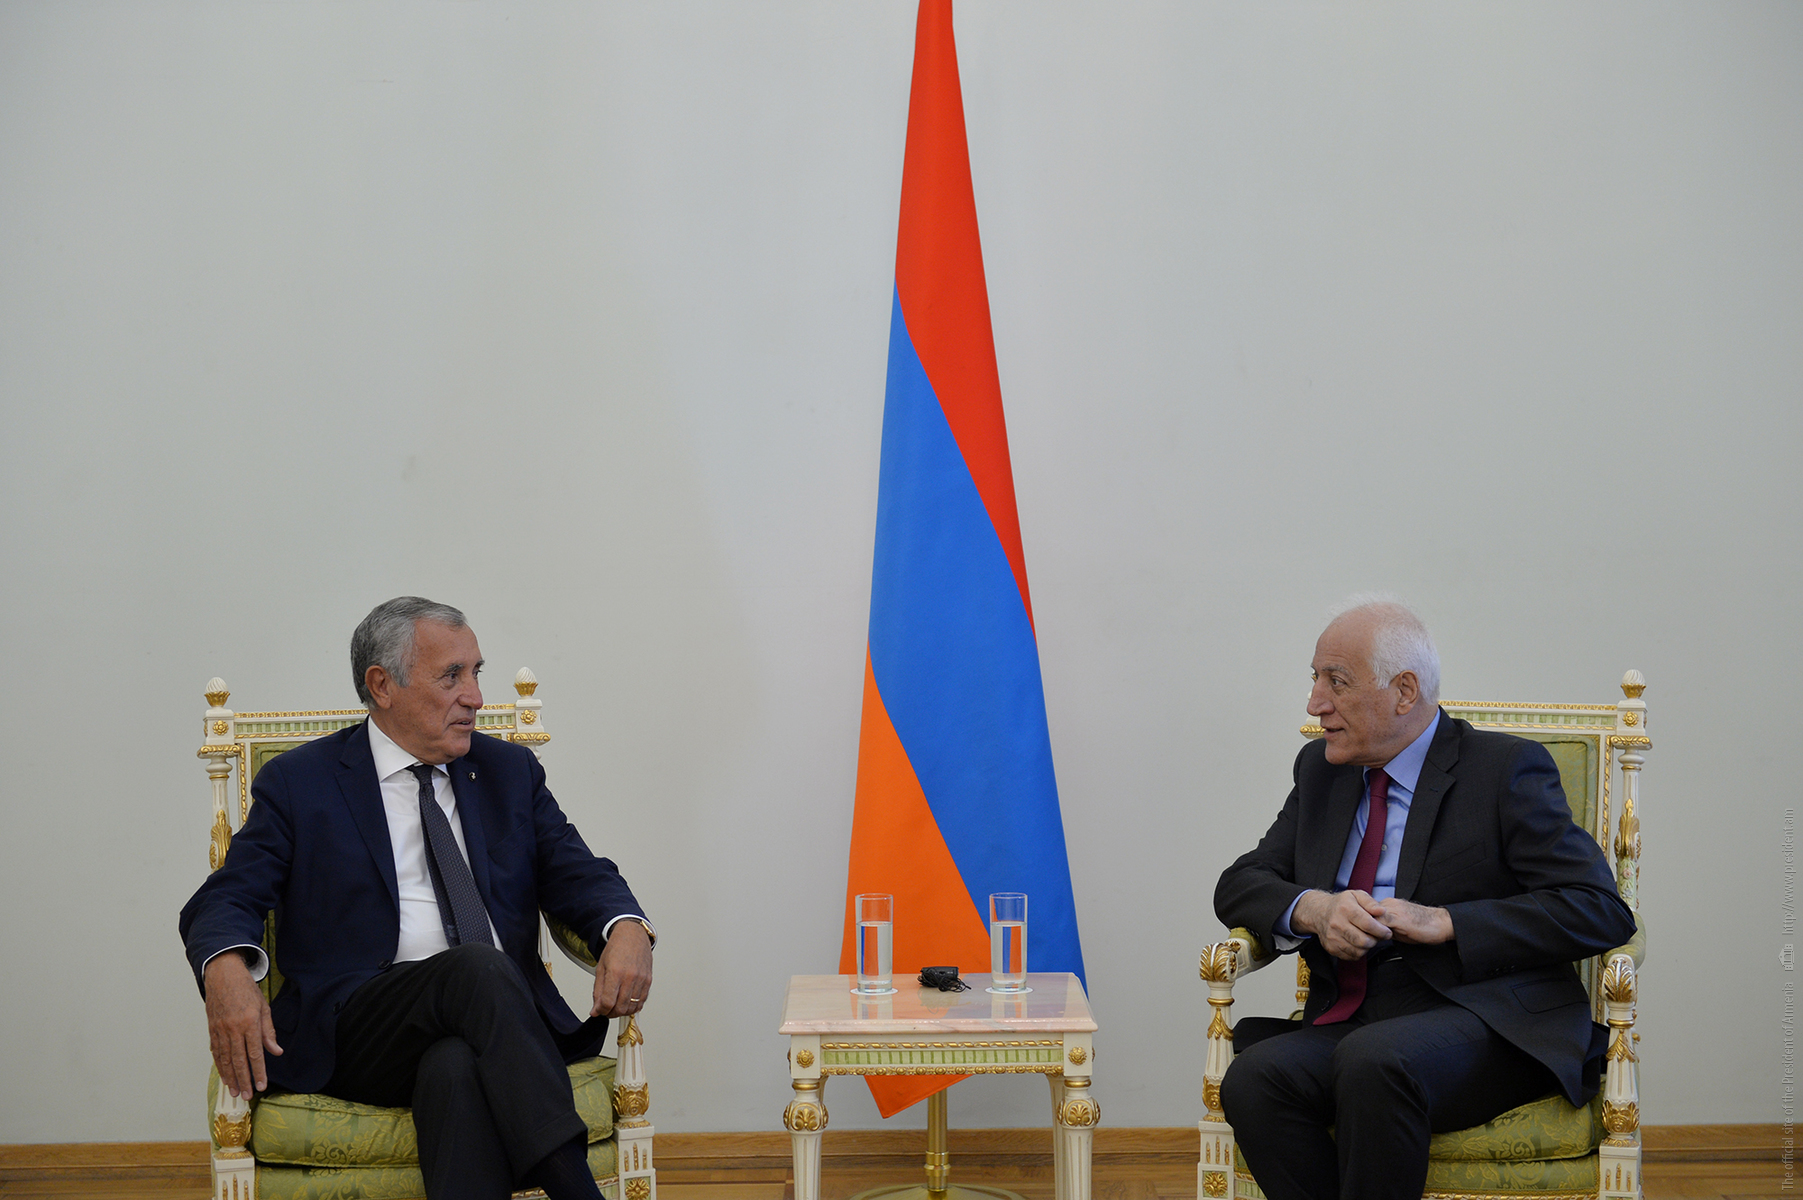 Der neue Botschafter des Malteserordens in Armenien legt seine Beglaubigungsschreiben vor